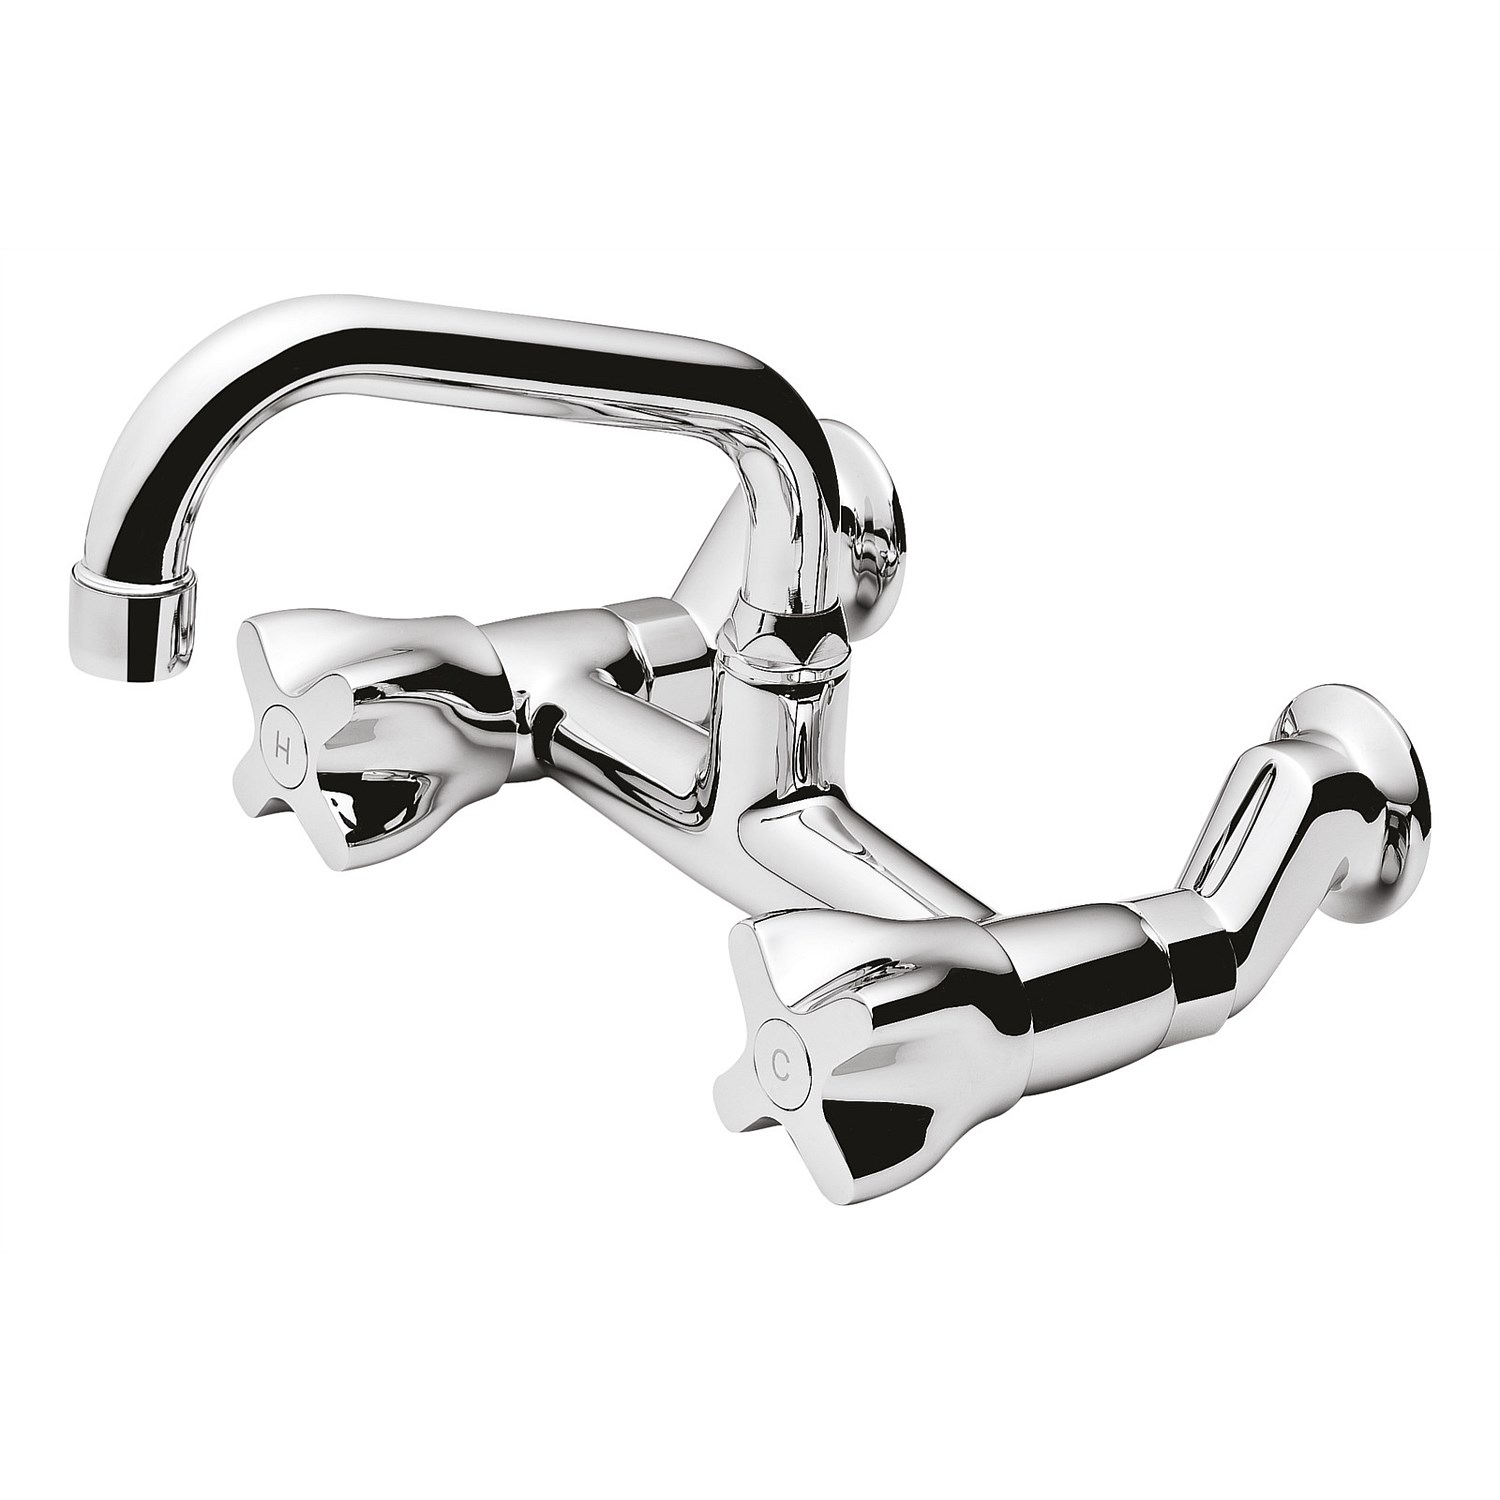 Kitchen Taps & Sink Mixers | Plumbing World - Methven Awa Wall Mounted Kitchen  Faucet